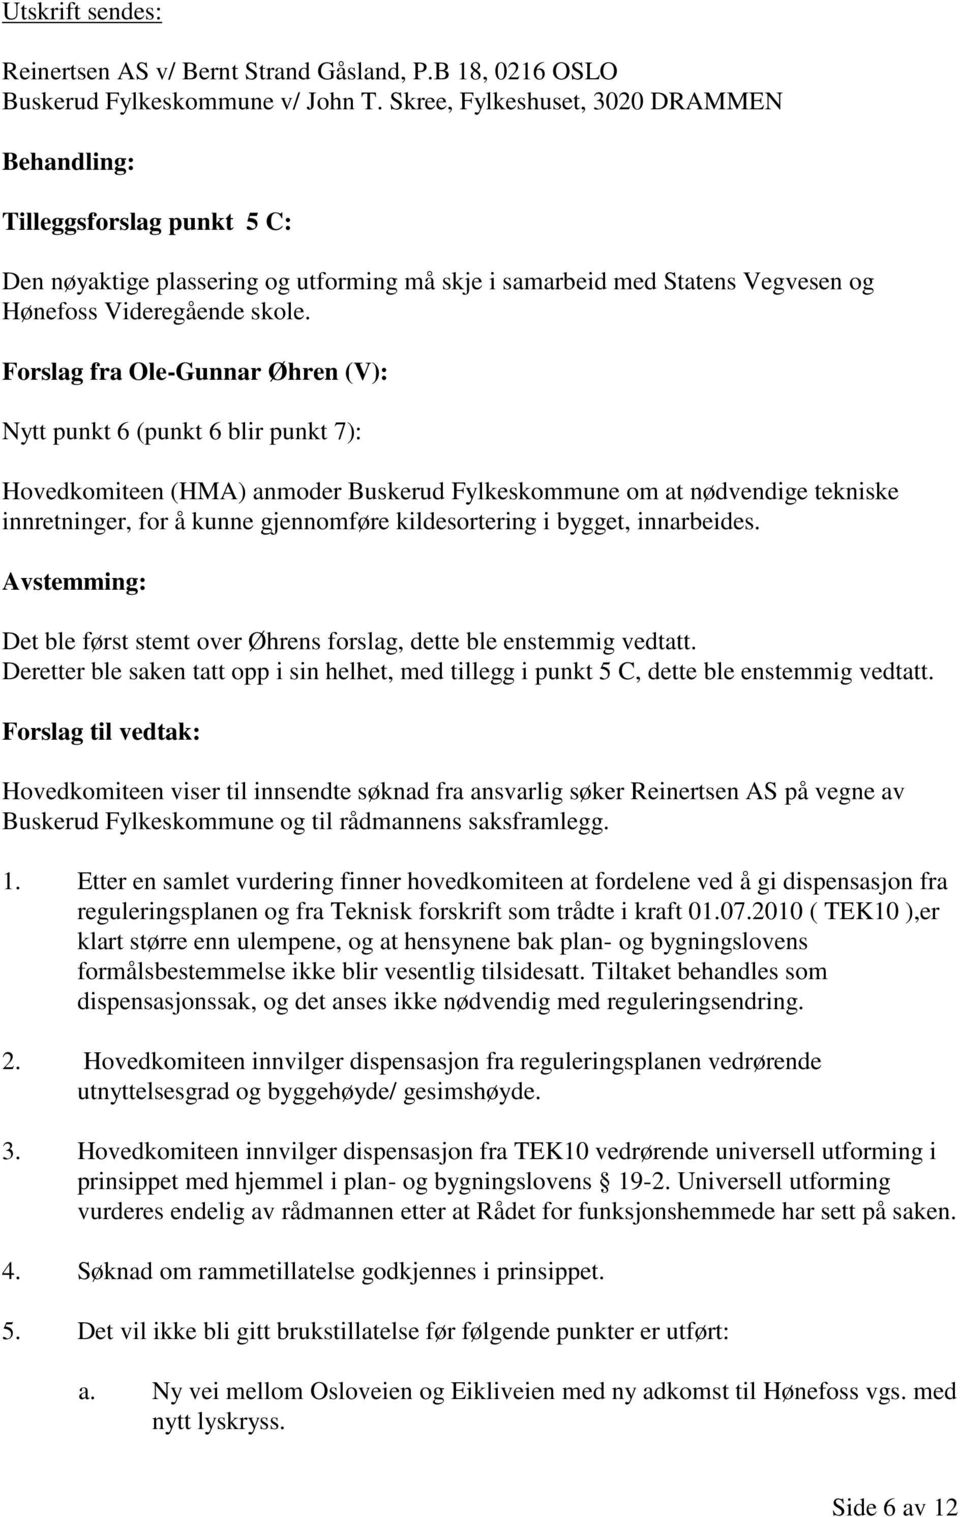 Forslag fra Ole-Gunnar Øhren (V): Nytt punkt 6 (punkt 6 blir punkt 7): Hovedkomiteen (HMA) anmoder Buskerud Fylkeskommune om at nødvendige tekniske innretninger, for å kunne gjennomføre